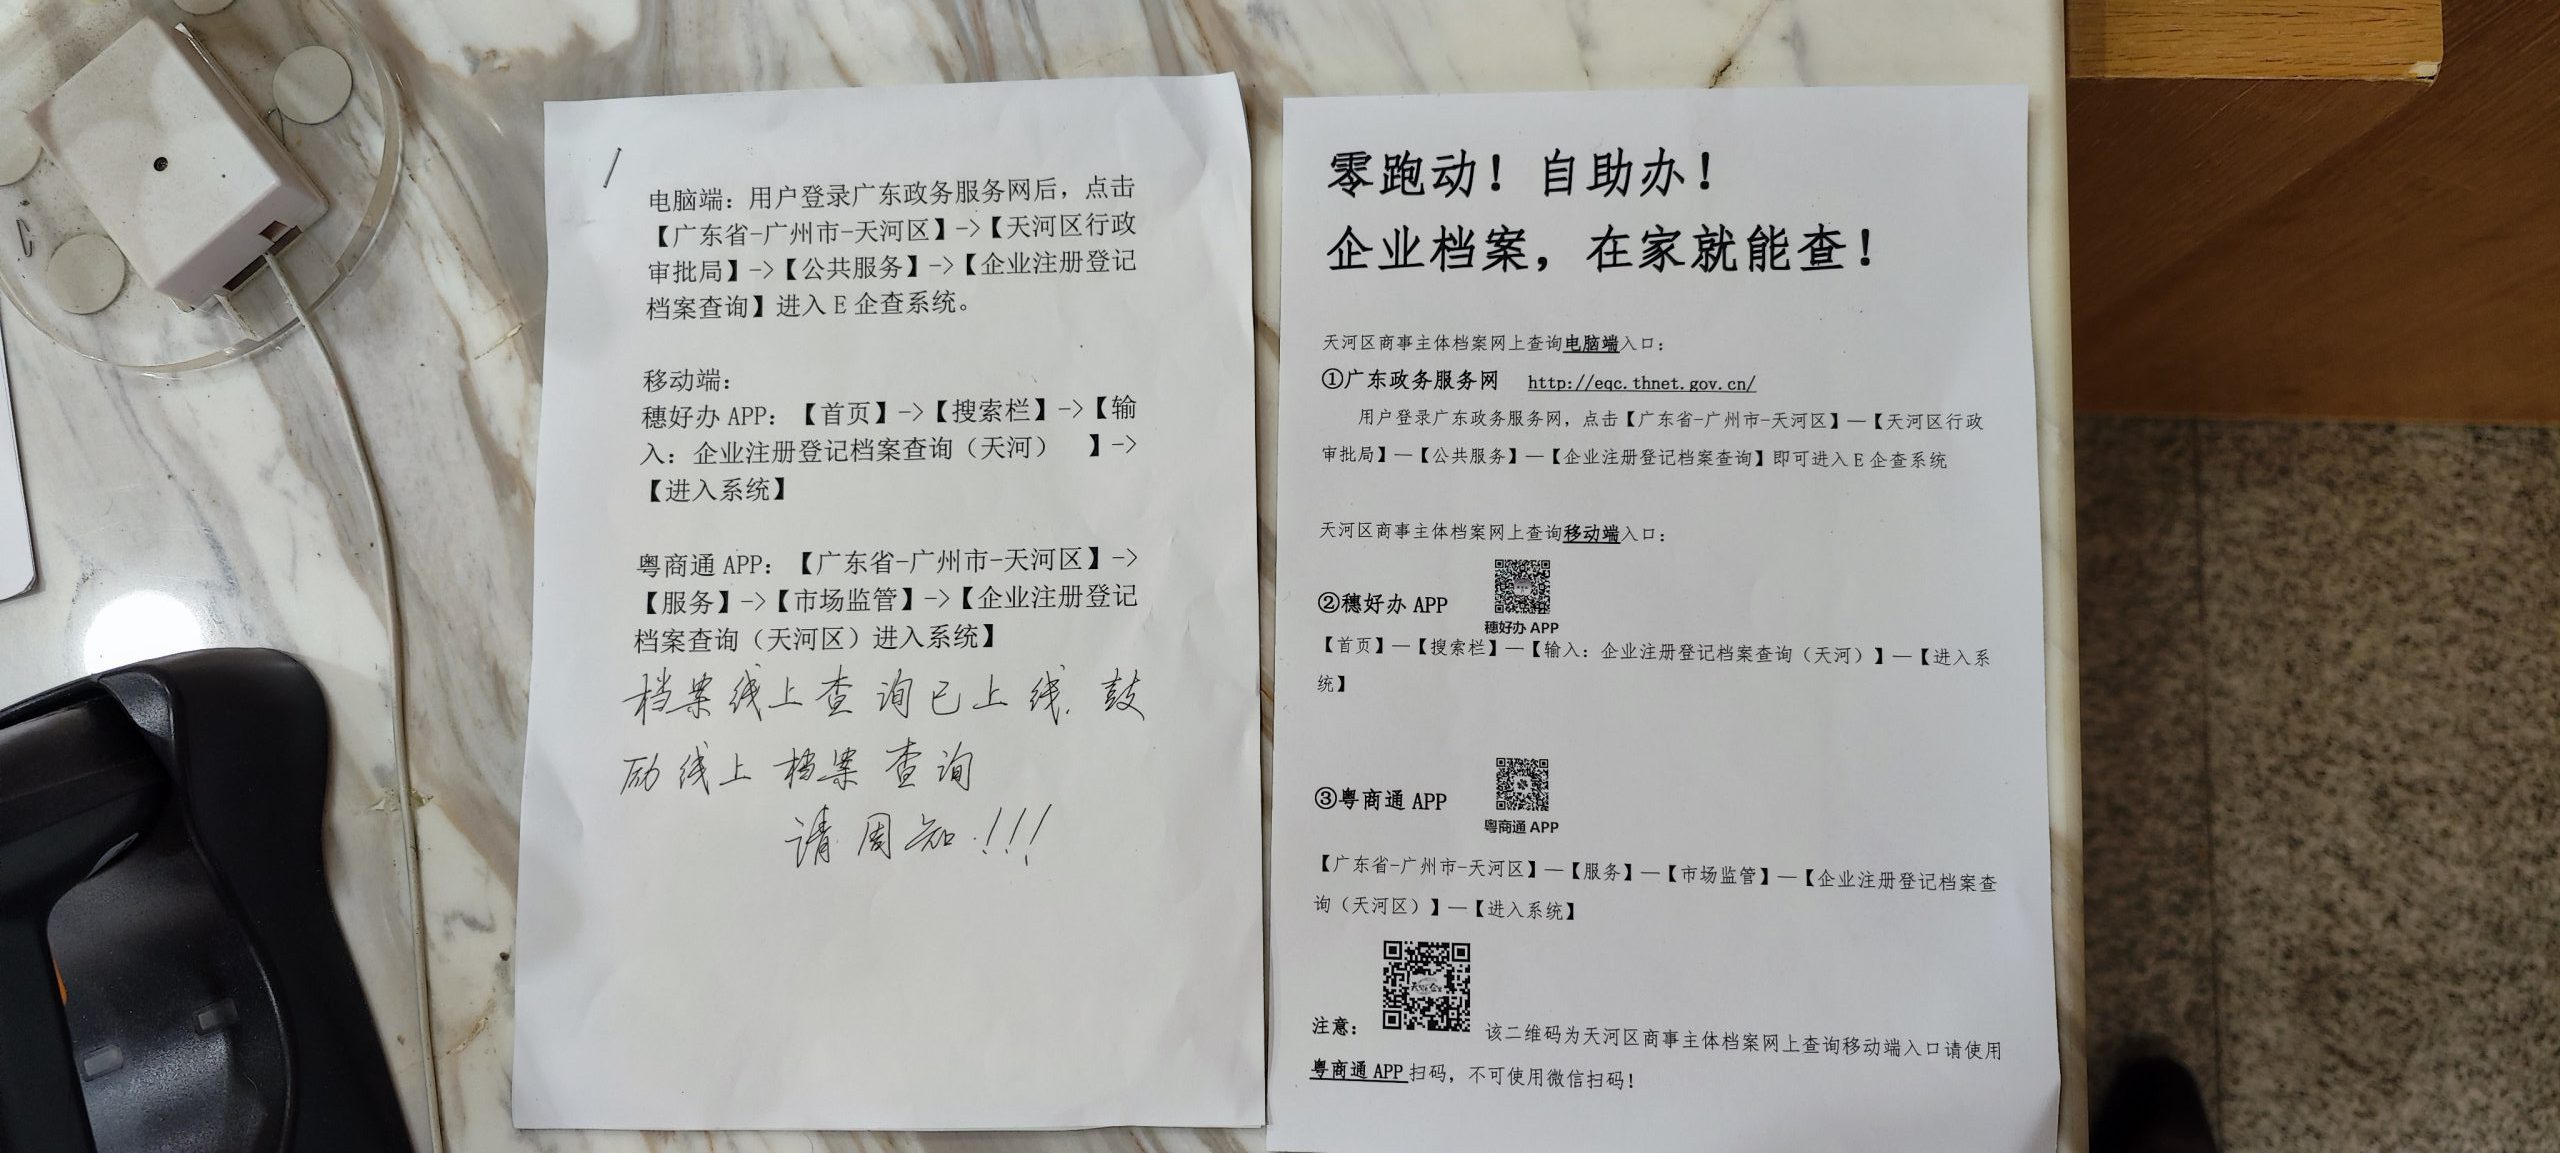 广州市天河区工商档案已开放网上查询